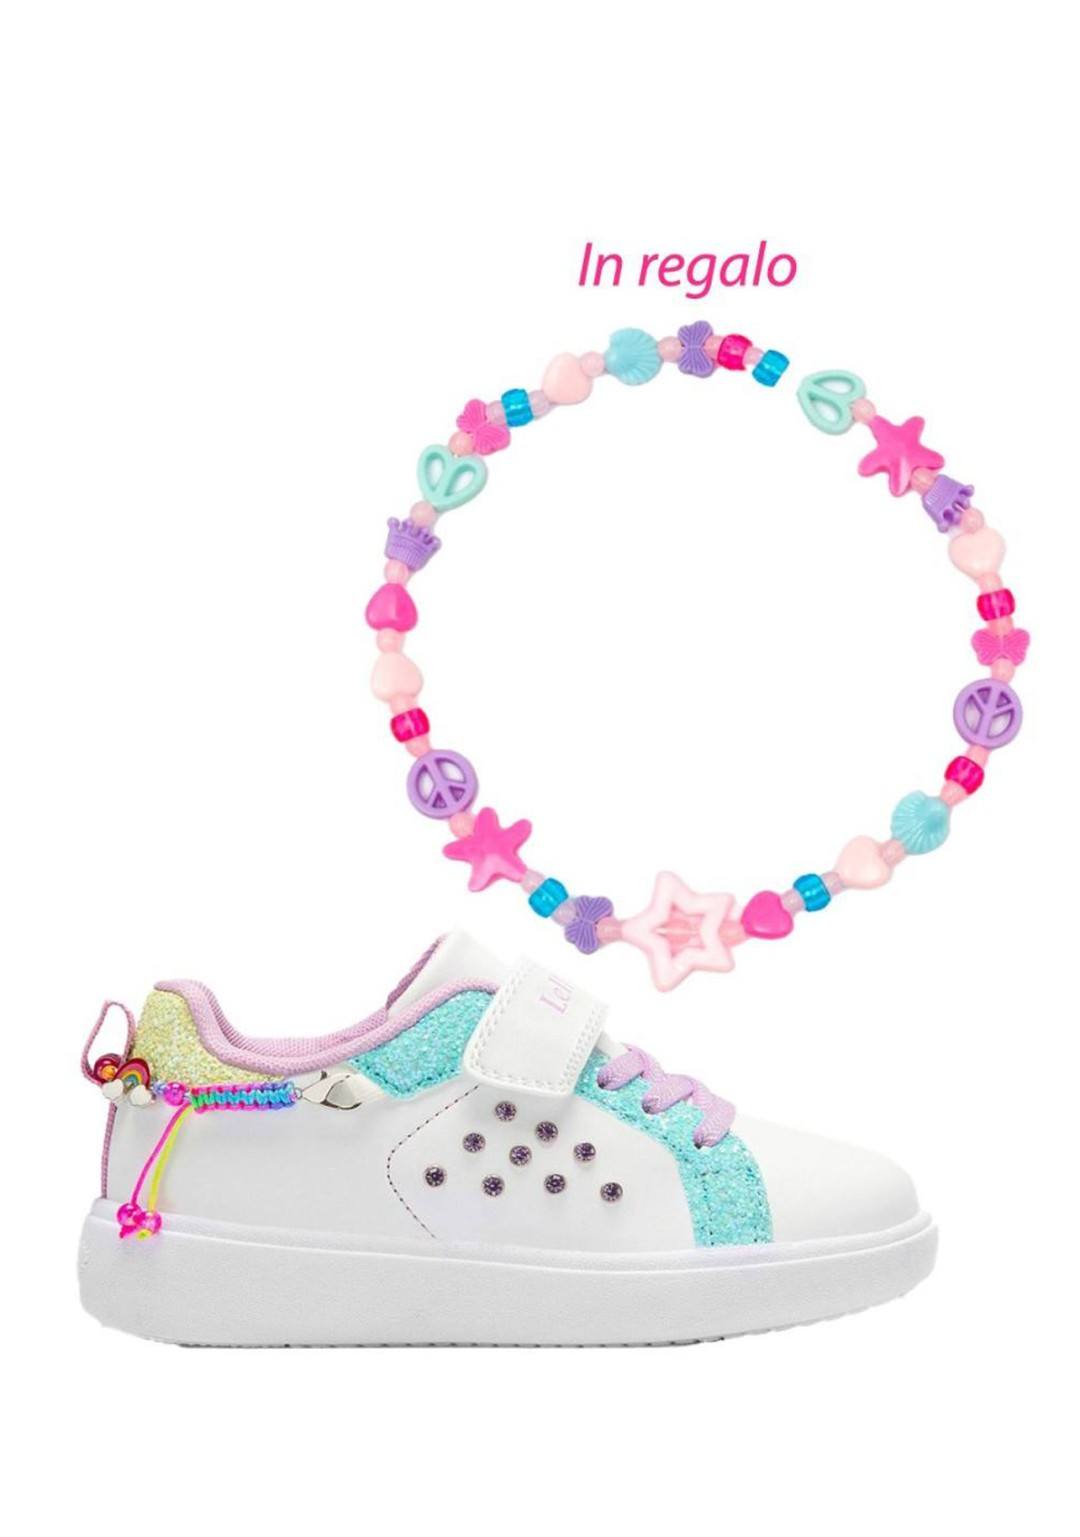 Lelli Kelly - Sneaker bracciale - Bambine e ragazze - LKAA3410 M